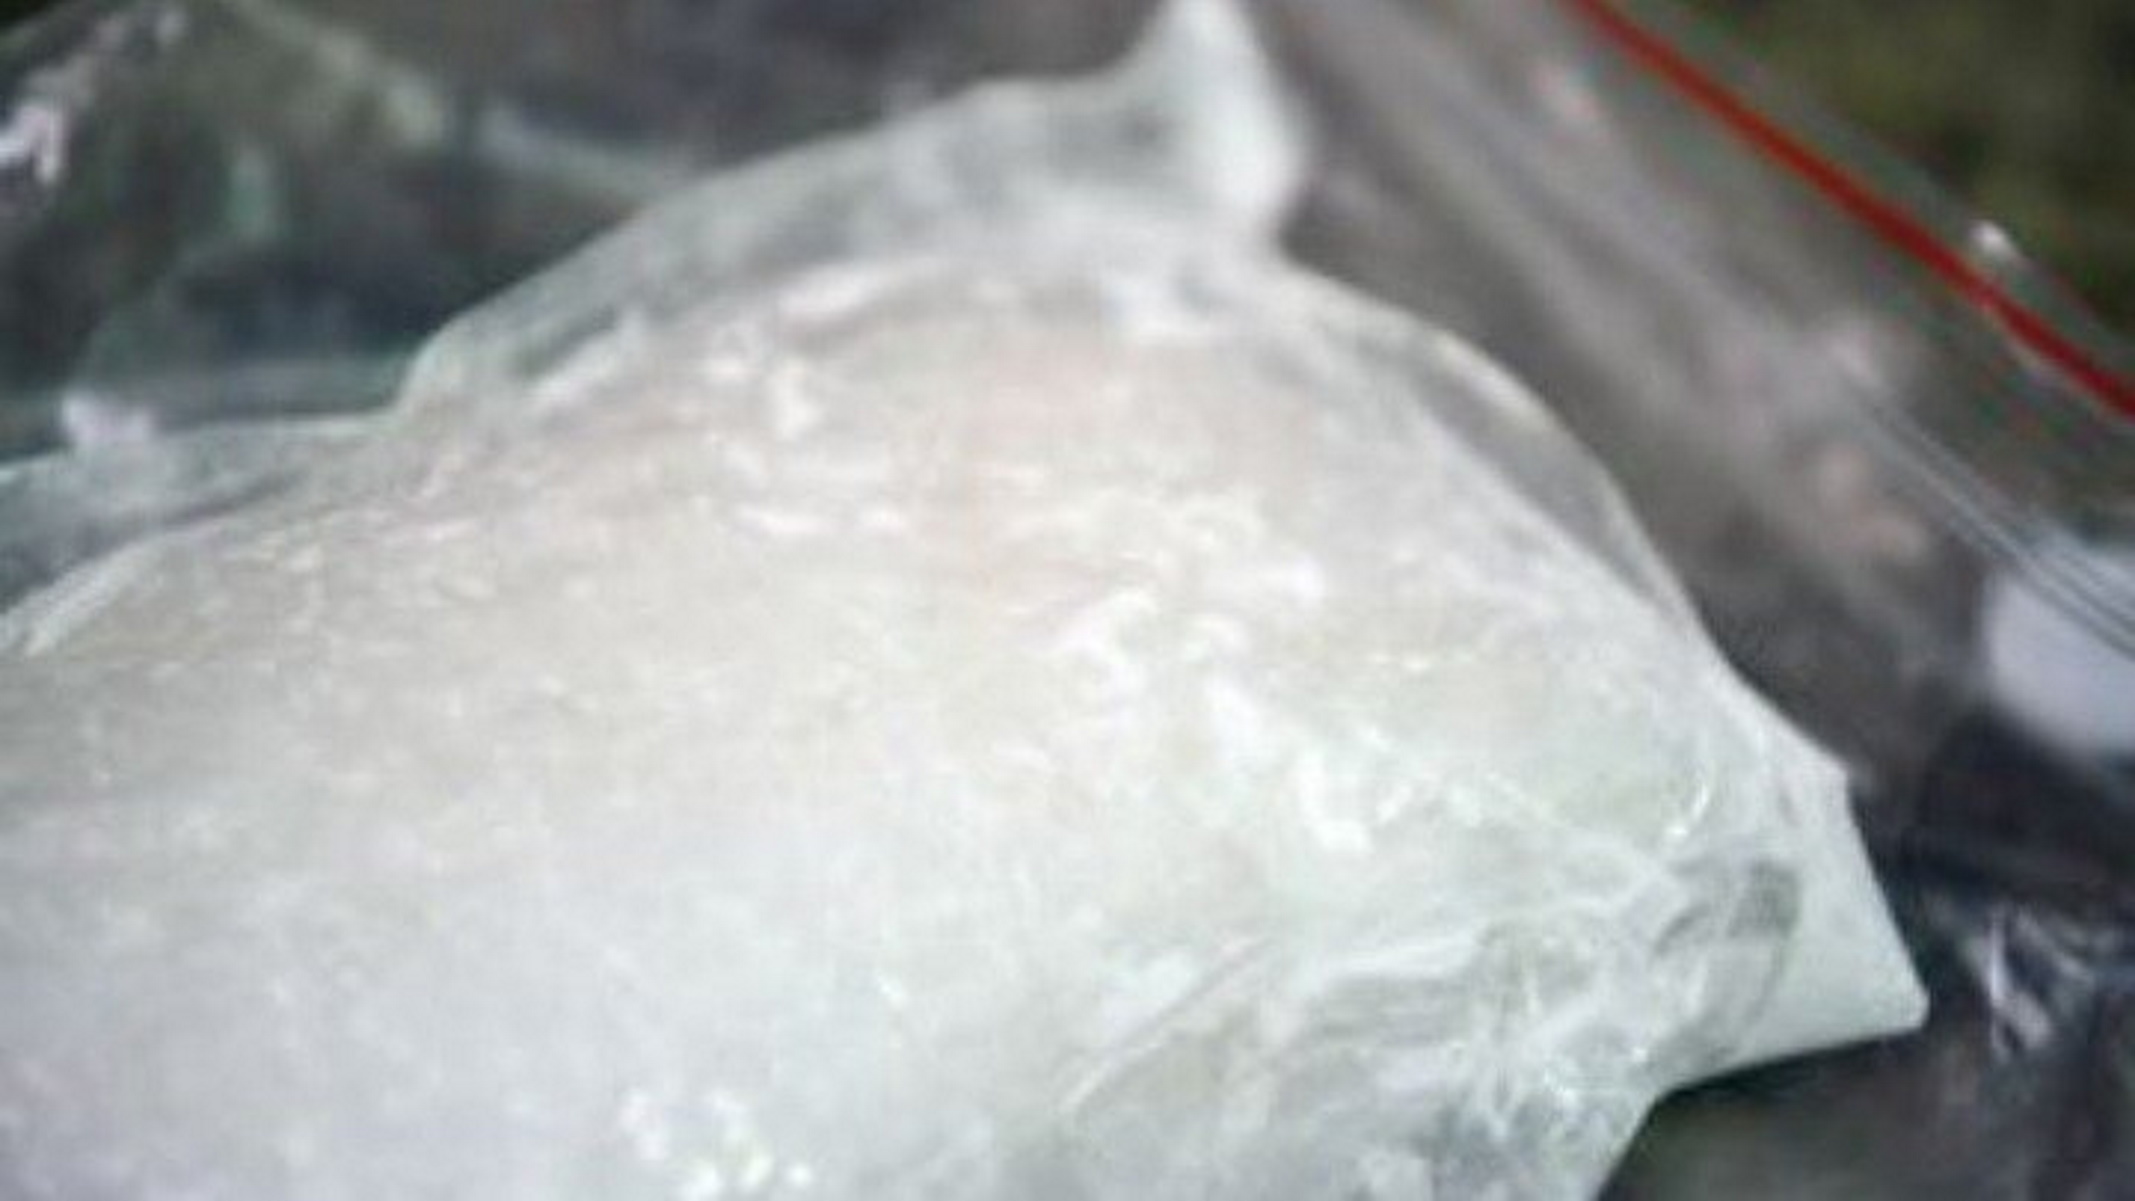 Στα χέρια της Αστυνομίας δύο διακινητές ναρκωτικών στην Αττική  – Βρέθηκαν στην κατοχή τους 23 κιλά κοκαΐνης